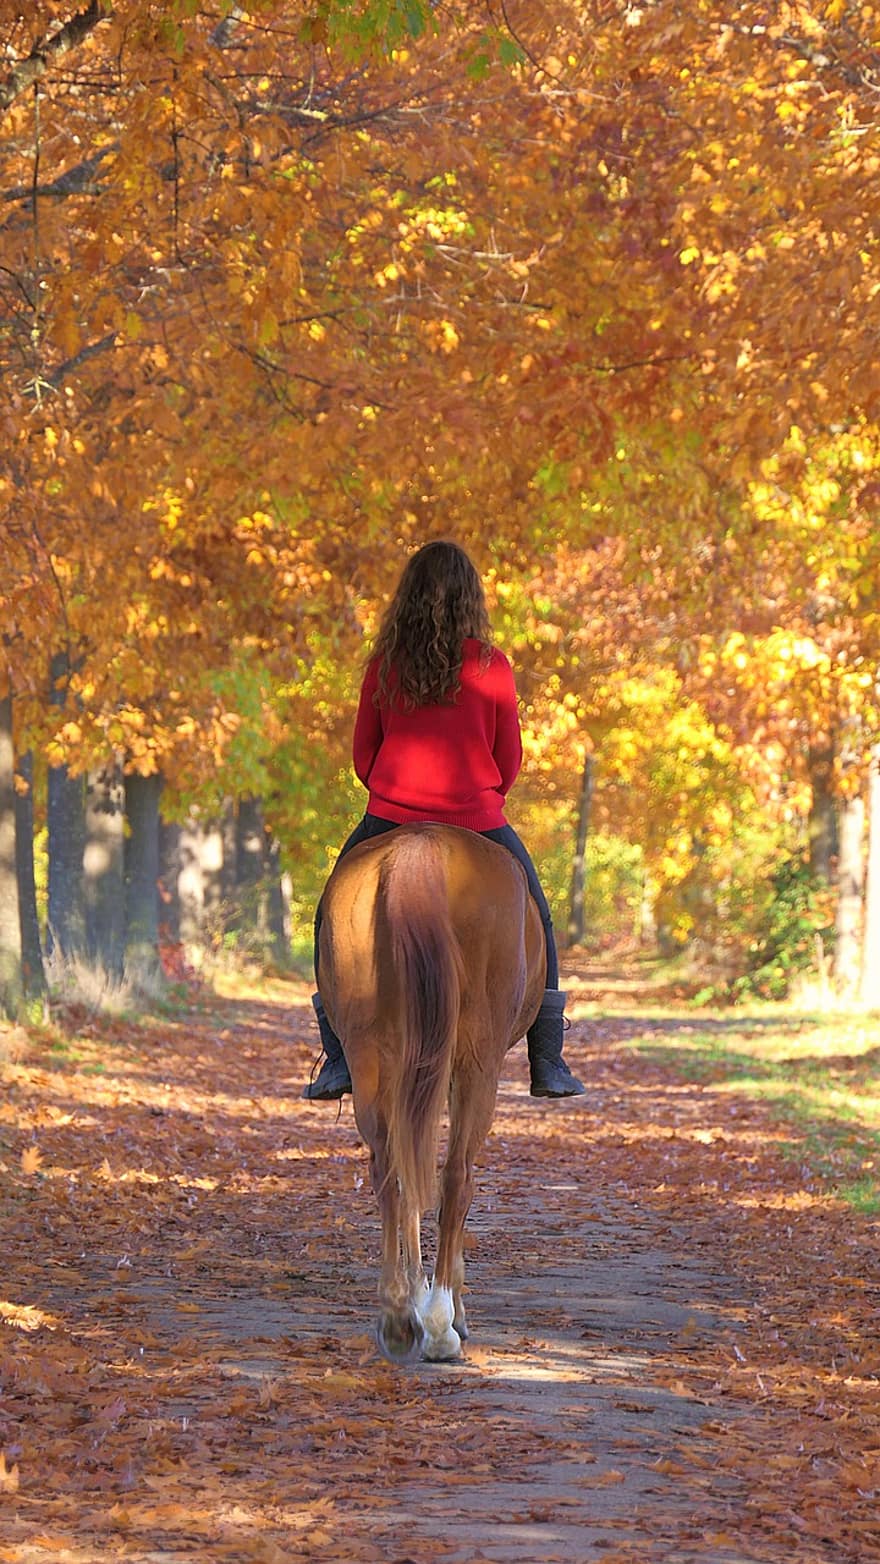 حصان ، فتاة ، اركب ، مسار ، خريف ، ركوب الخيل ، فرسي ، الفروسية ، ممر المشاة ، الأشجار ، الخريف